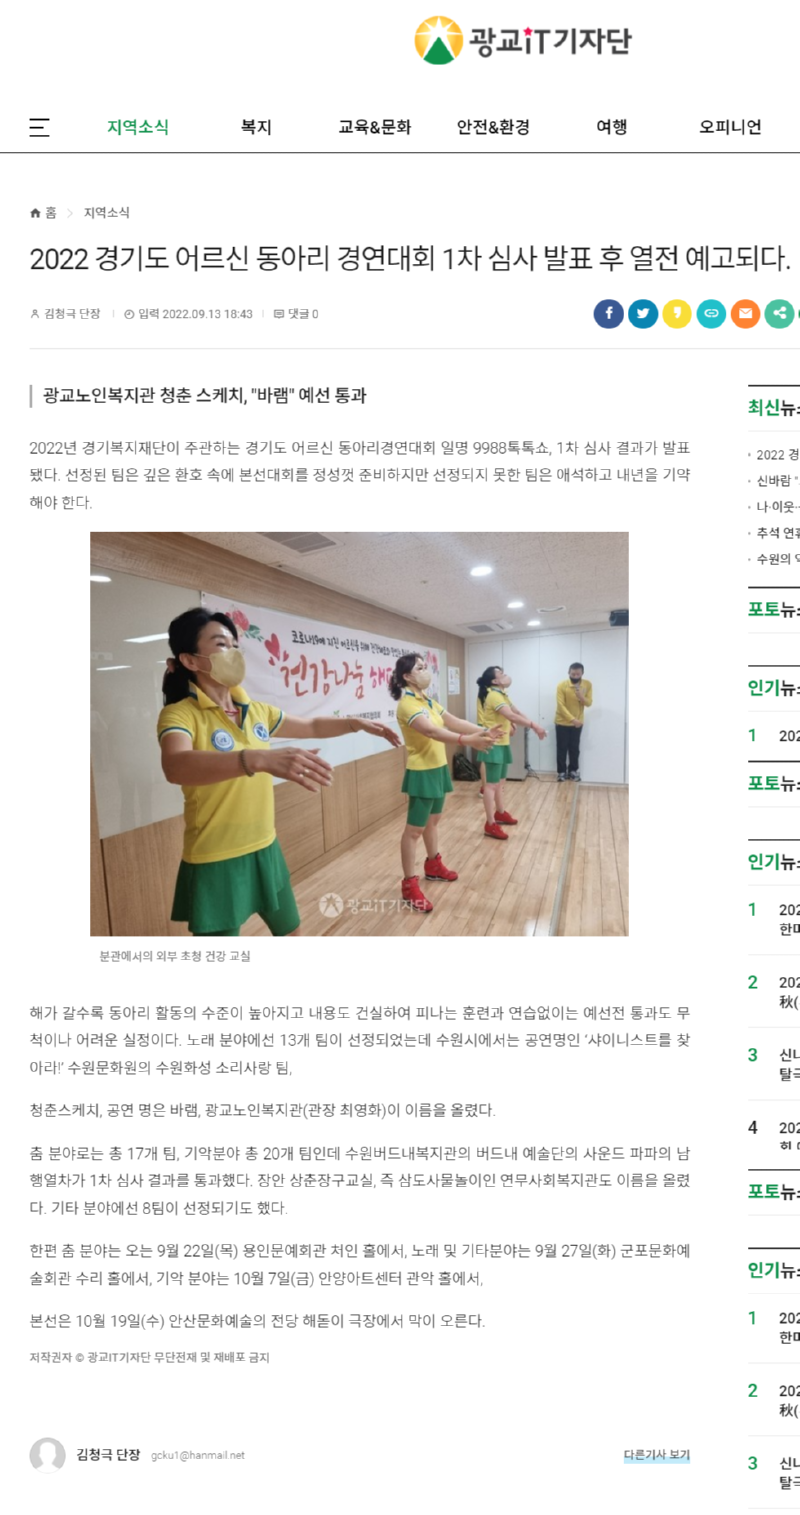 2022 경기도 어르신 동아리 경연대회 1차 심사 발표 후 열전 예고되다..png